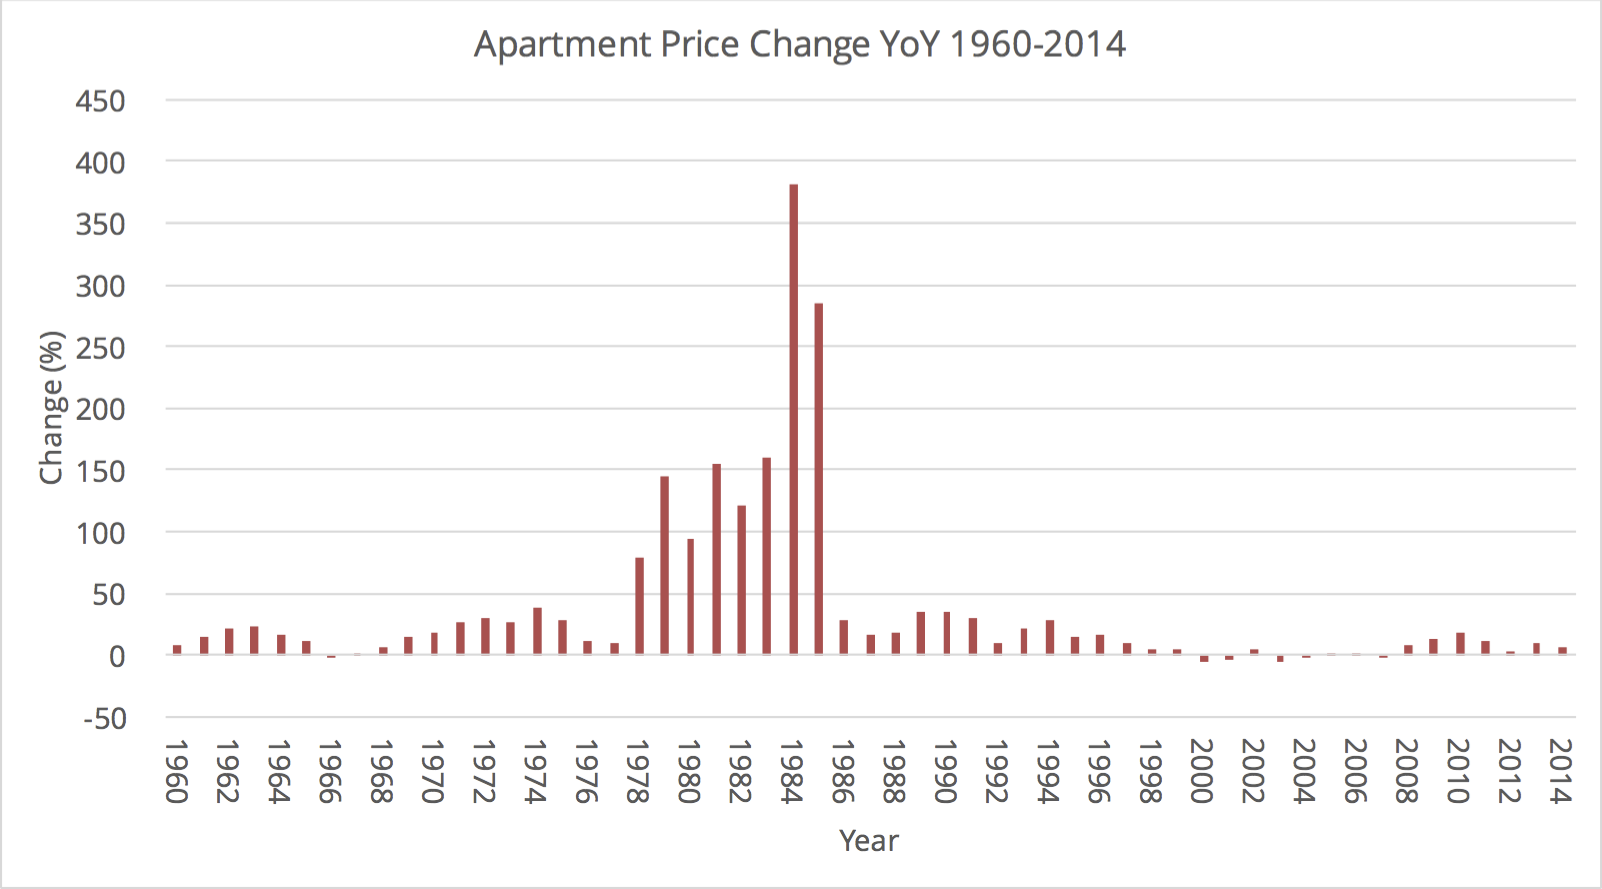 שינוי שנתי באחוזים במחירי הדירות 1960-2014. מקור: נתוני למ״ס